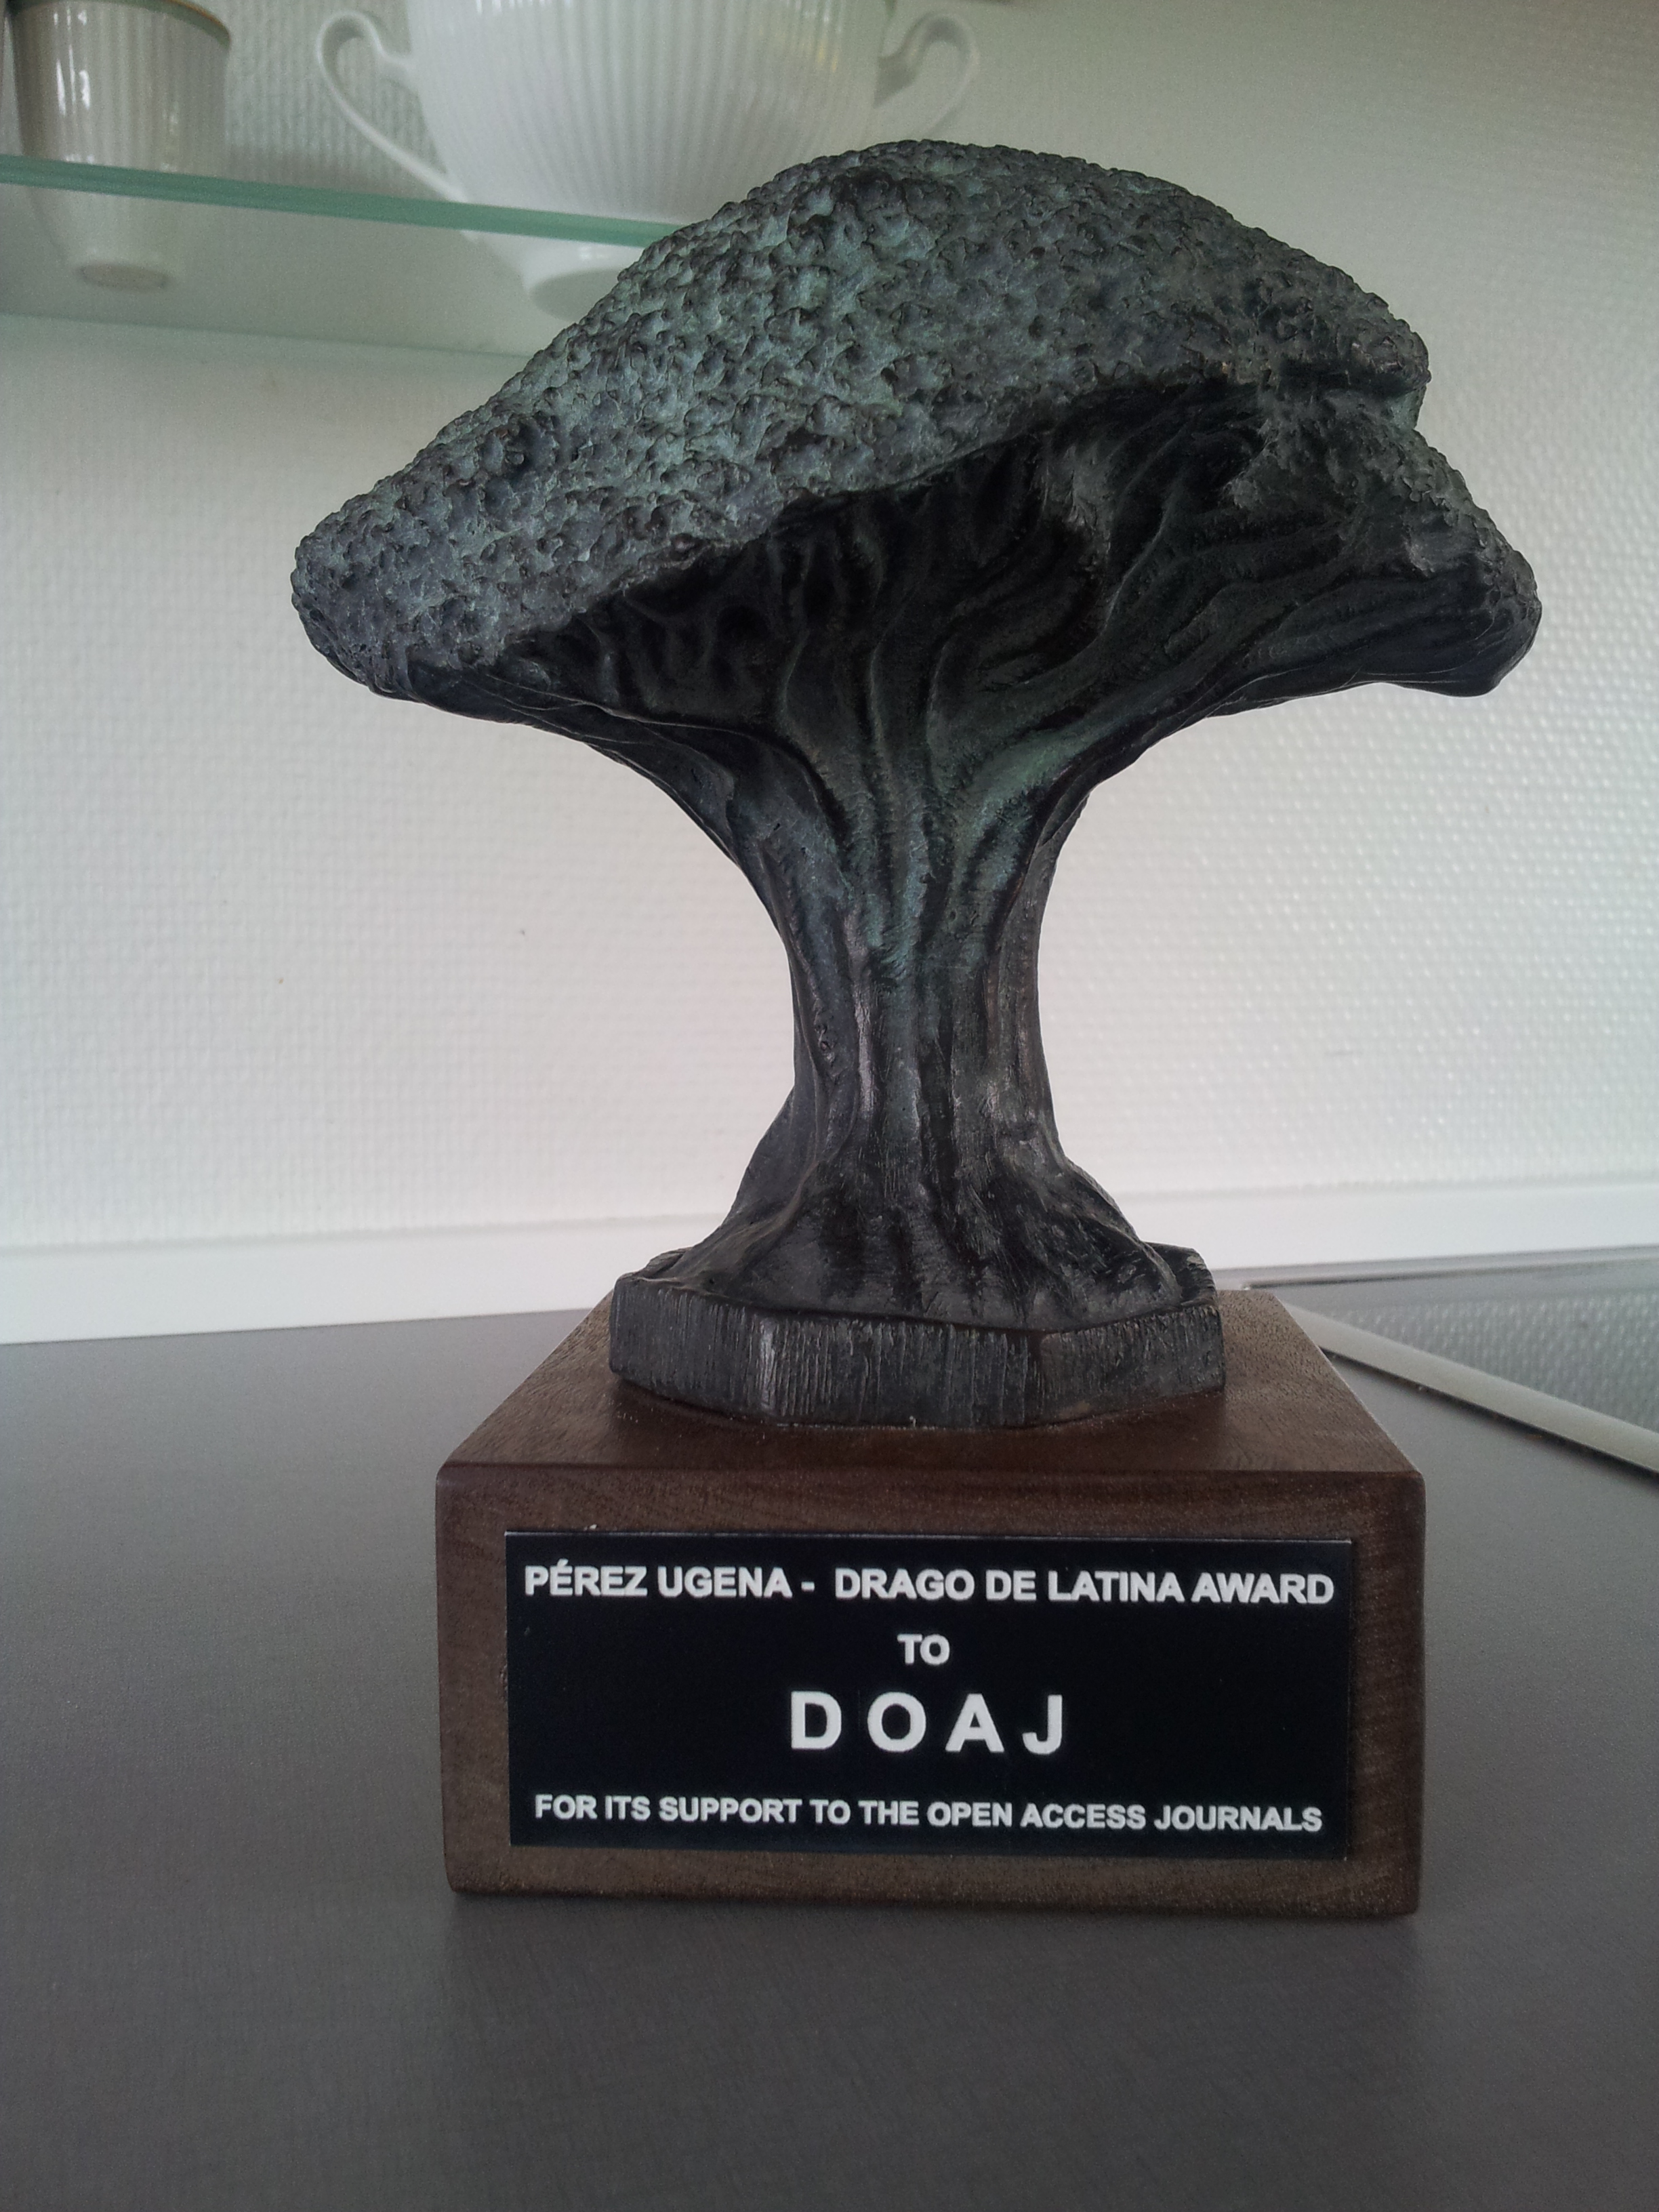 The Perez Ugena award